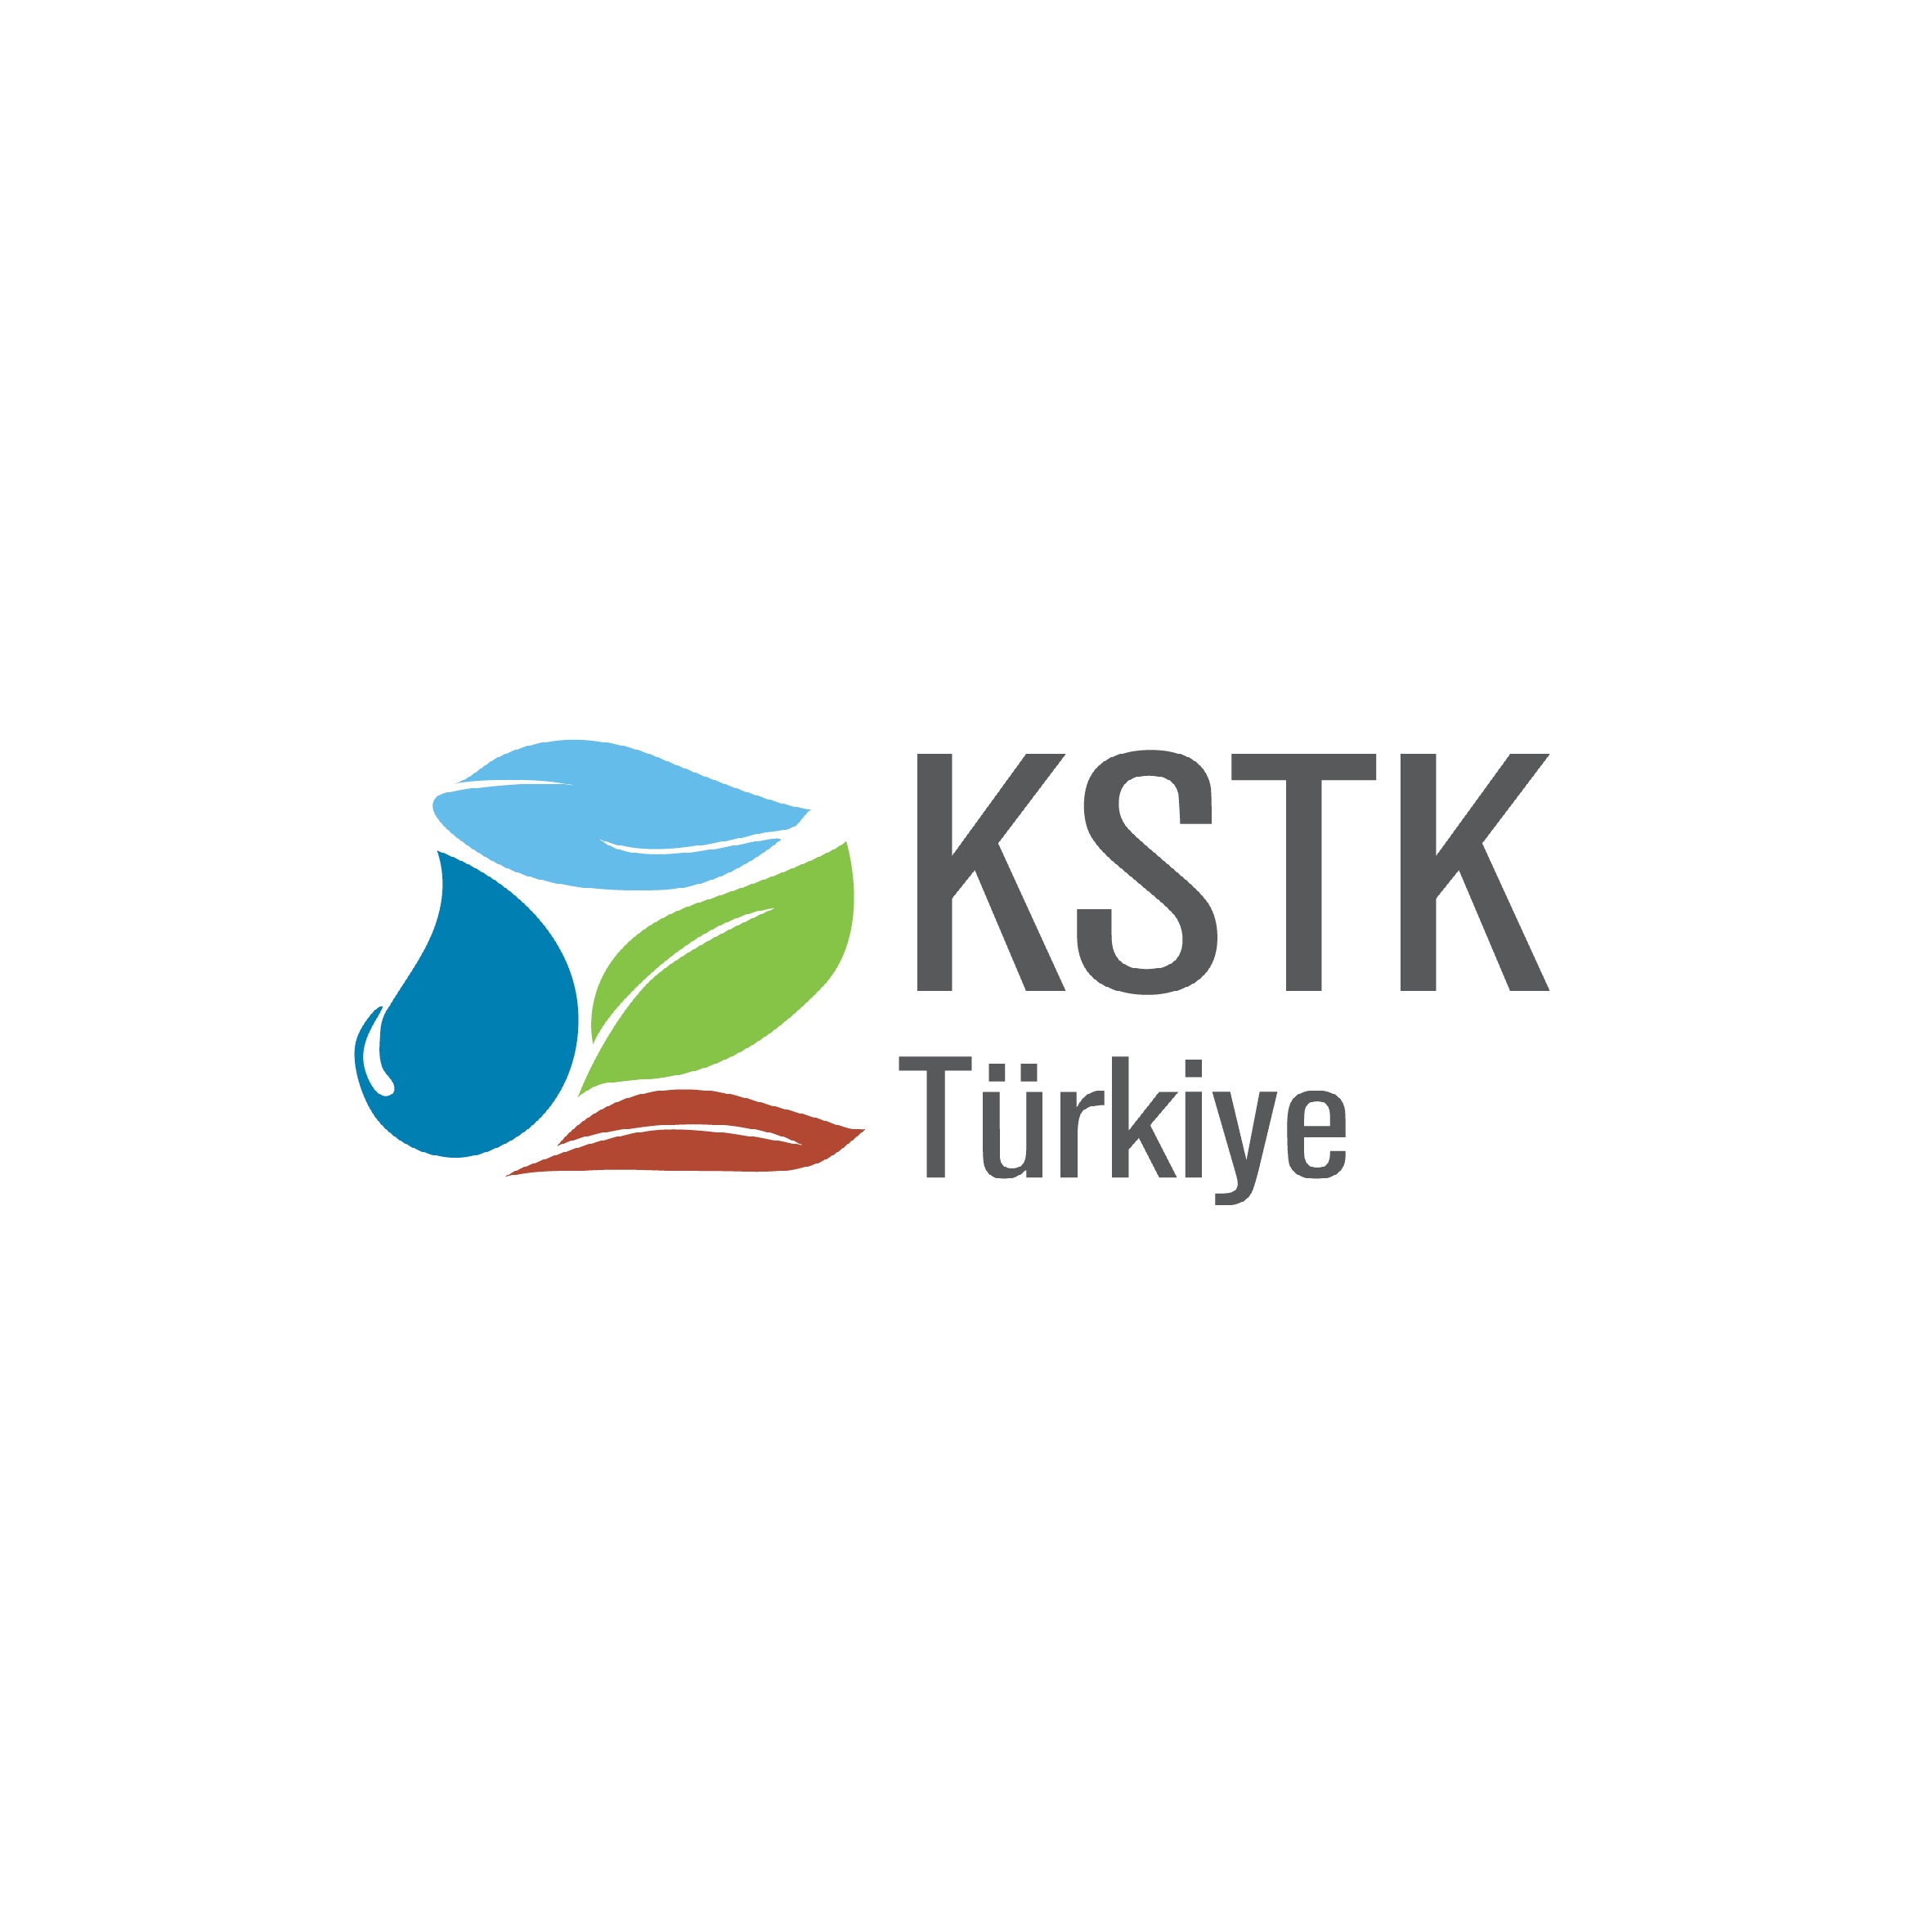 KSTK Yönetmeliği Uygulamaları – Atık ve Atıksu Yönetimi ile Kağıt ve Ahşap Üretimi ve İşlenmesi Sektörleri